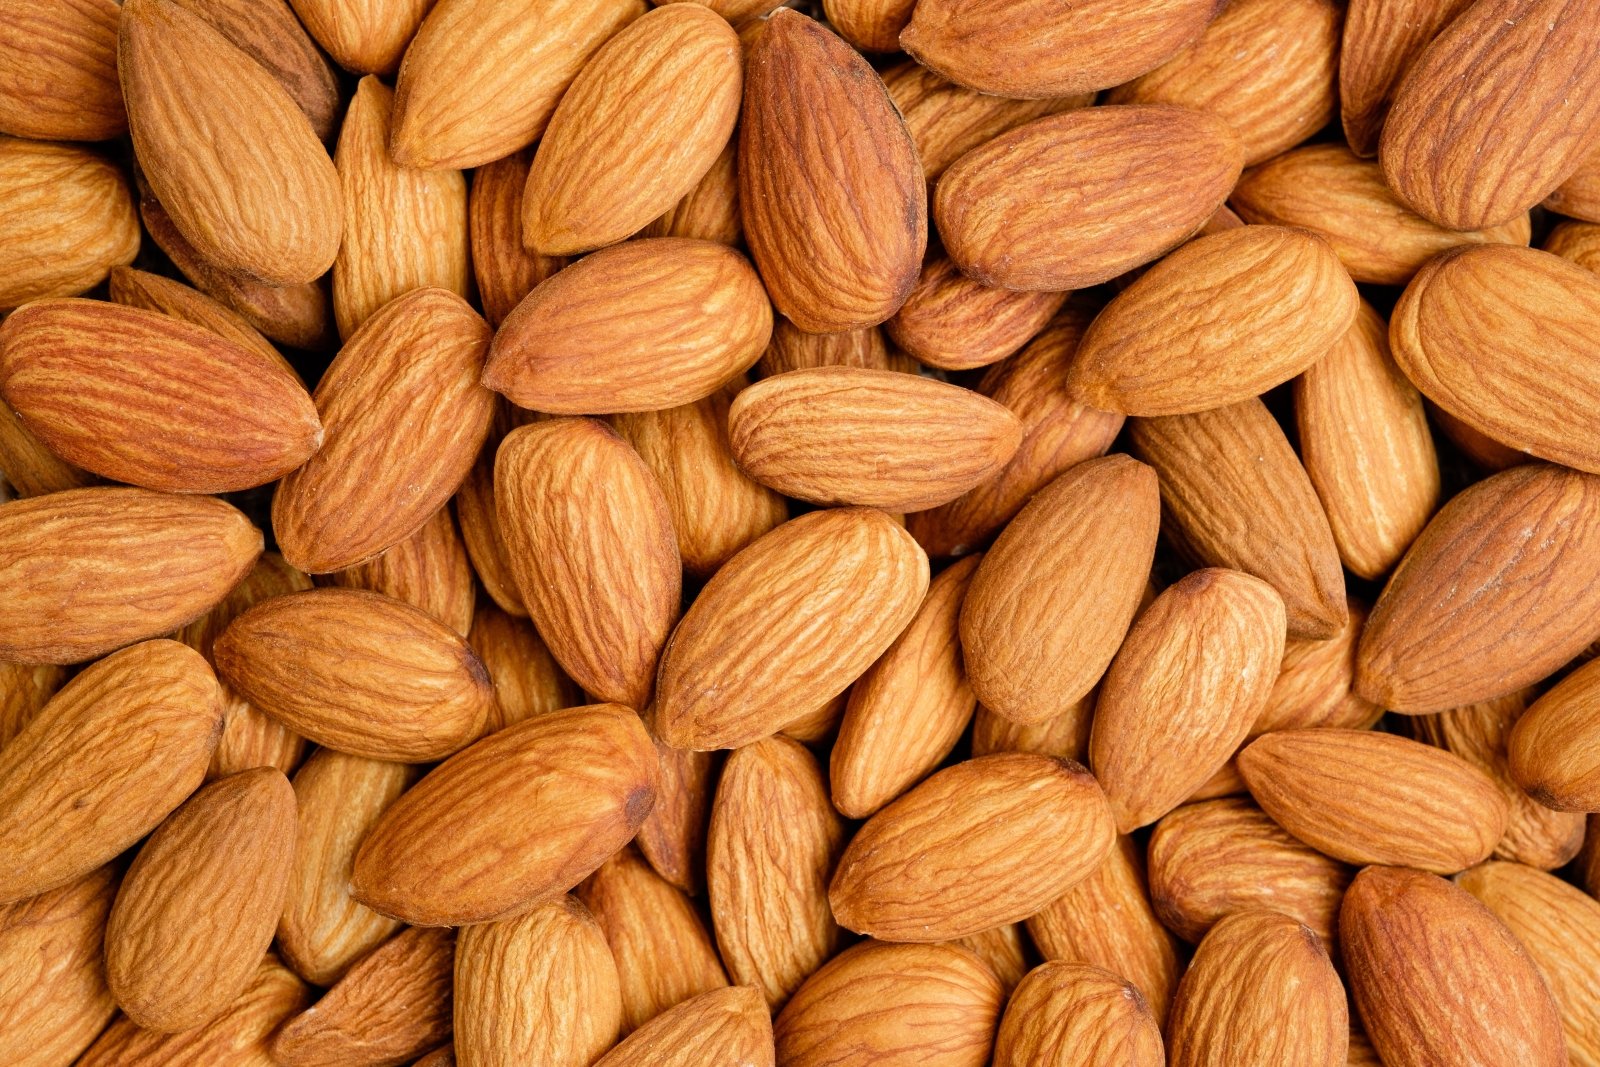 Almonds - The Deli